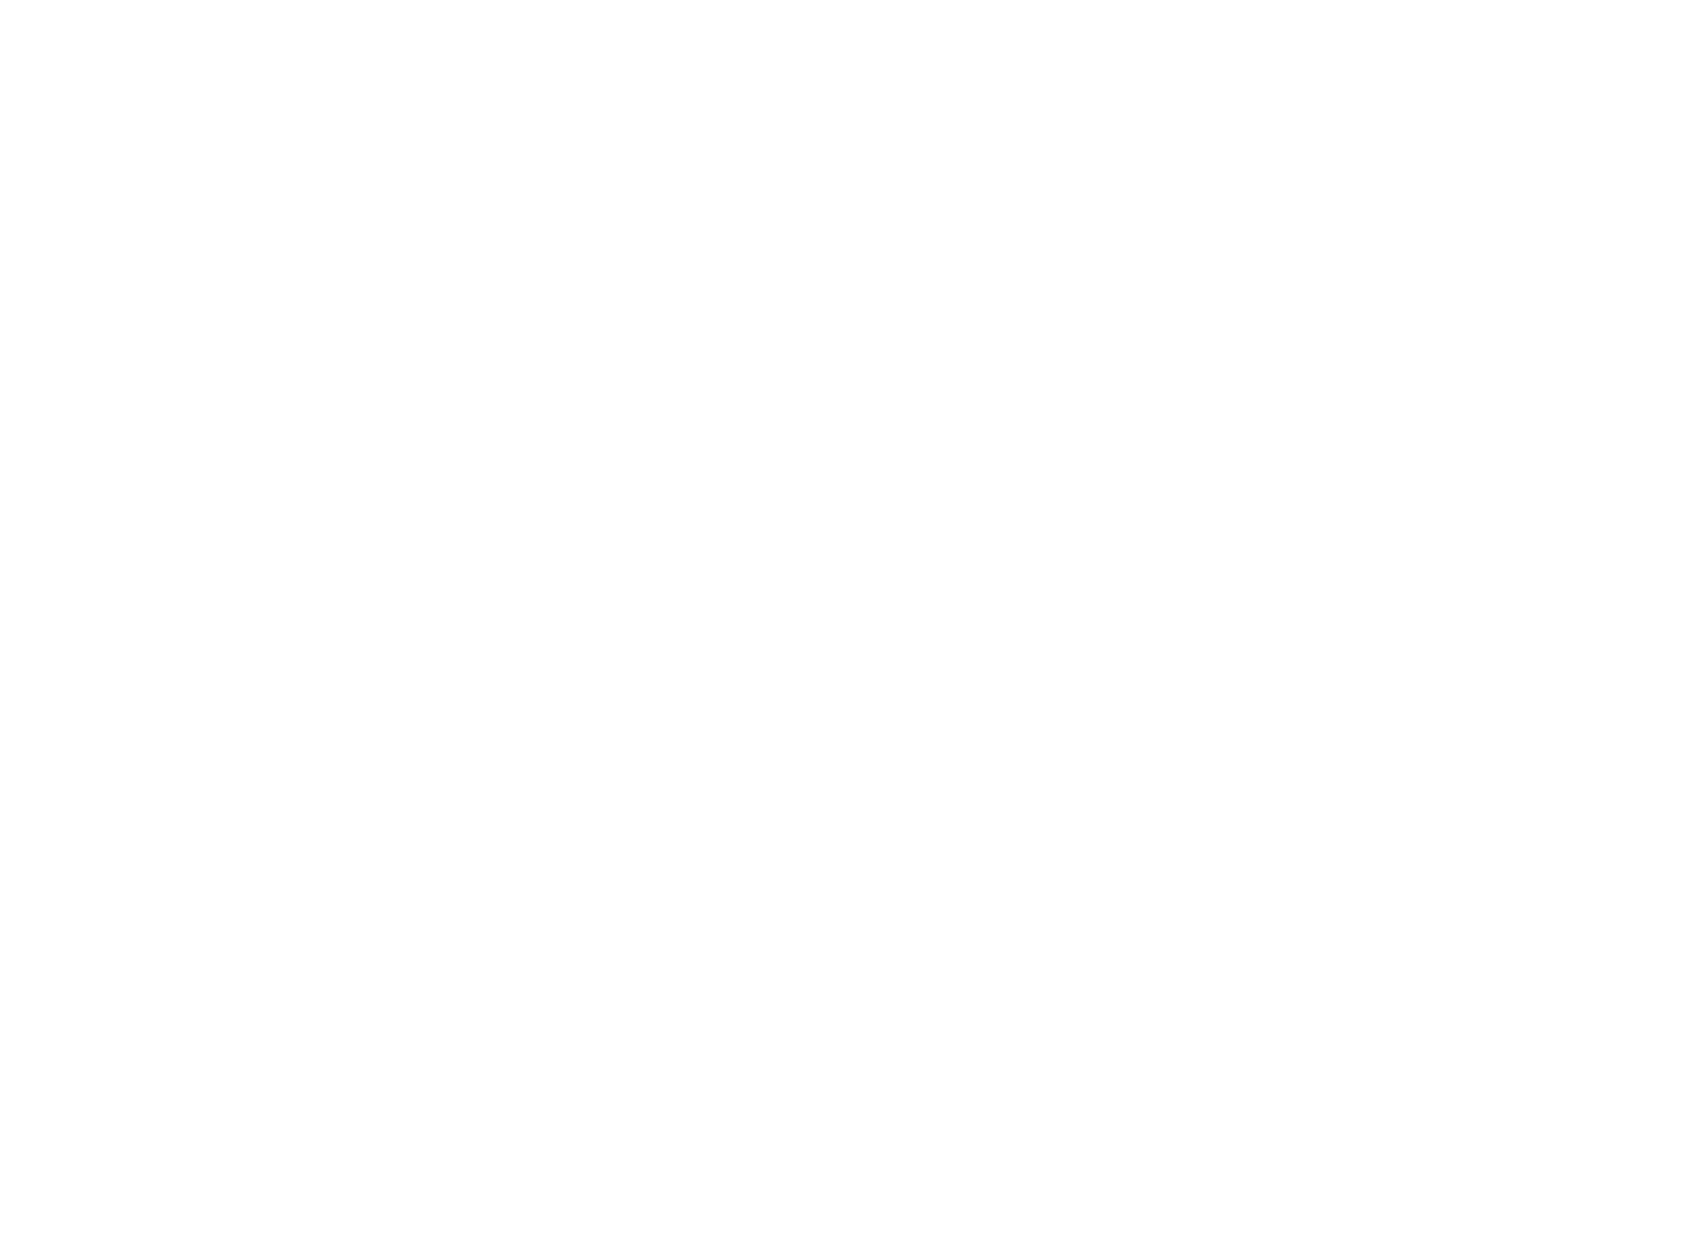 Stryker Corporation logo pour fonds sombres (PNG transparent)